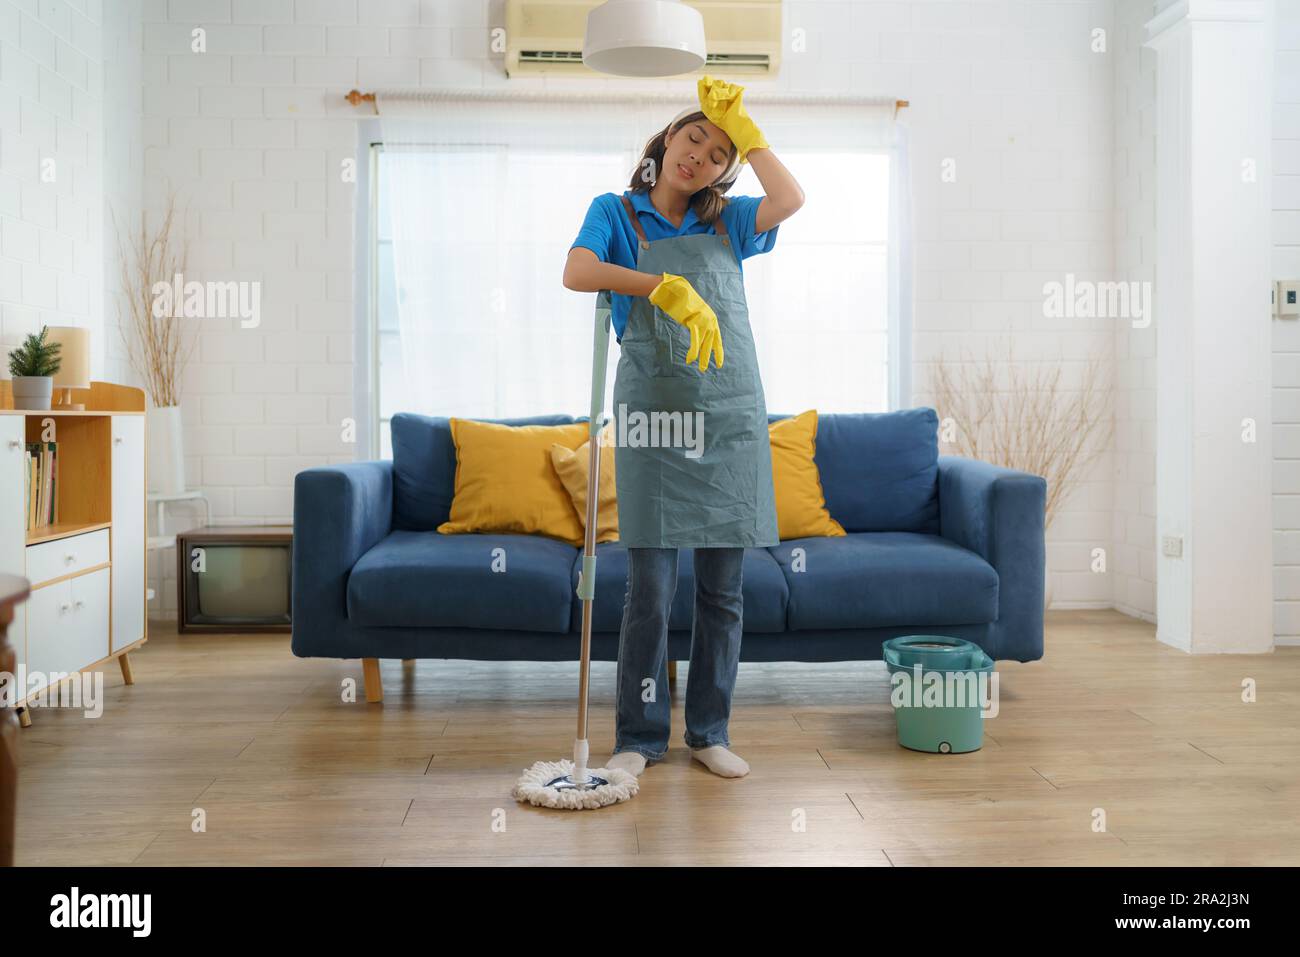 Exhausta criada asiática lucha con la fatiga mientras trapea la casa, mostrando los desafíos y el trabajo duro detrás de la casa doméstica Foto de stock